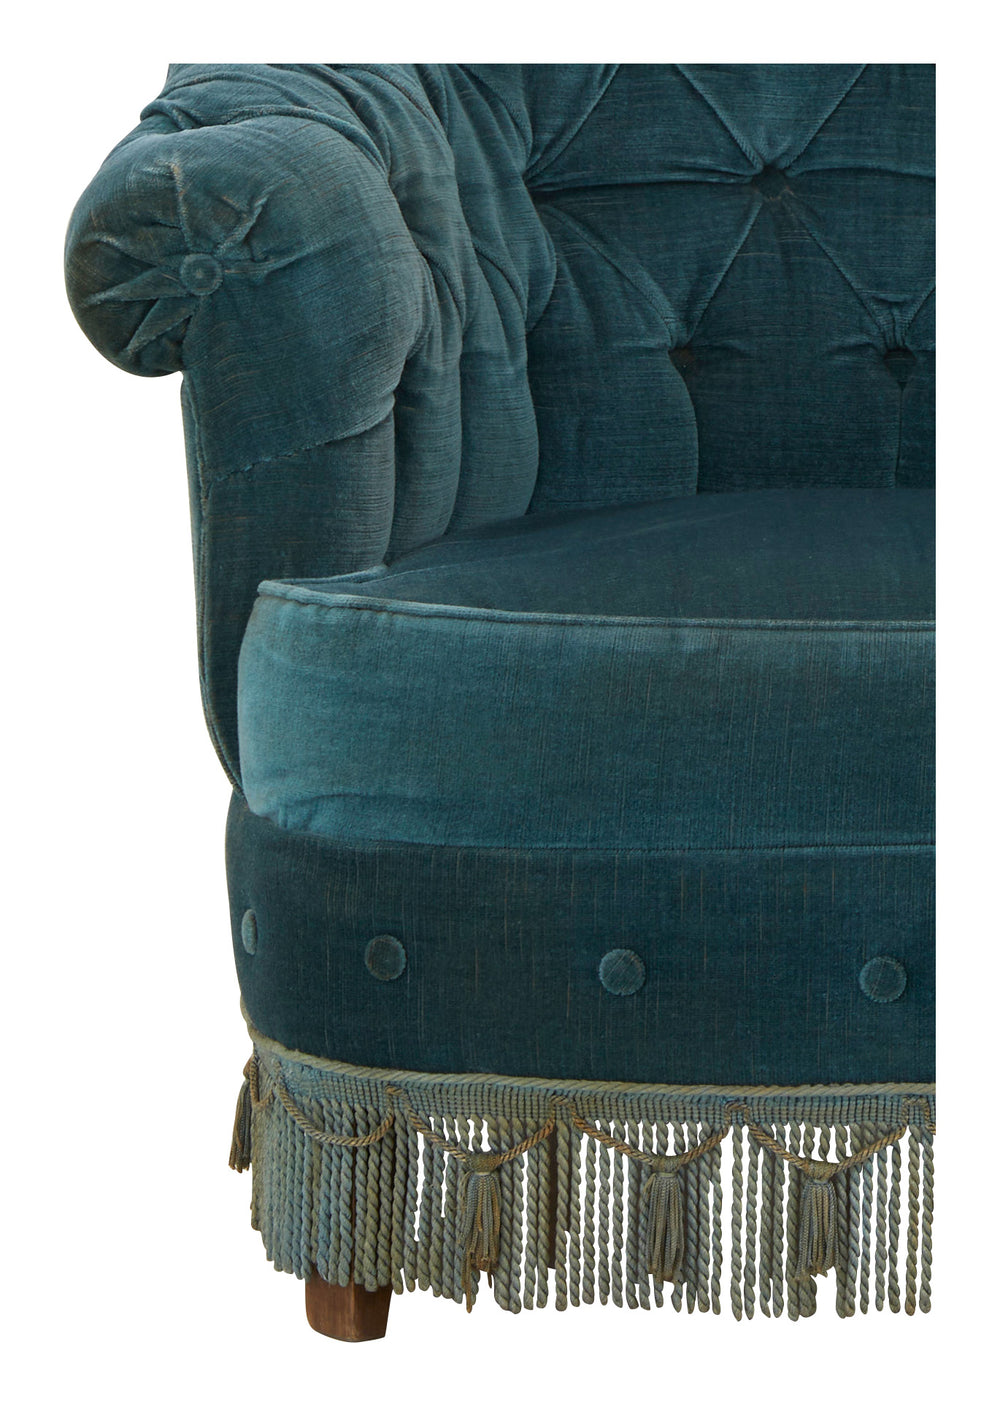 Antique Velvet Tufted Chair